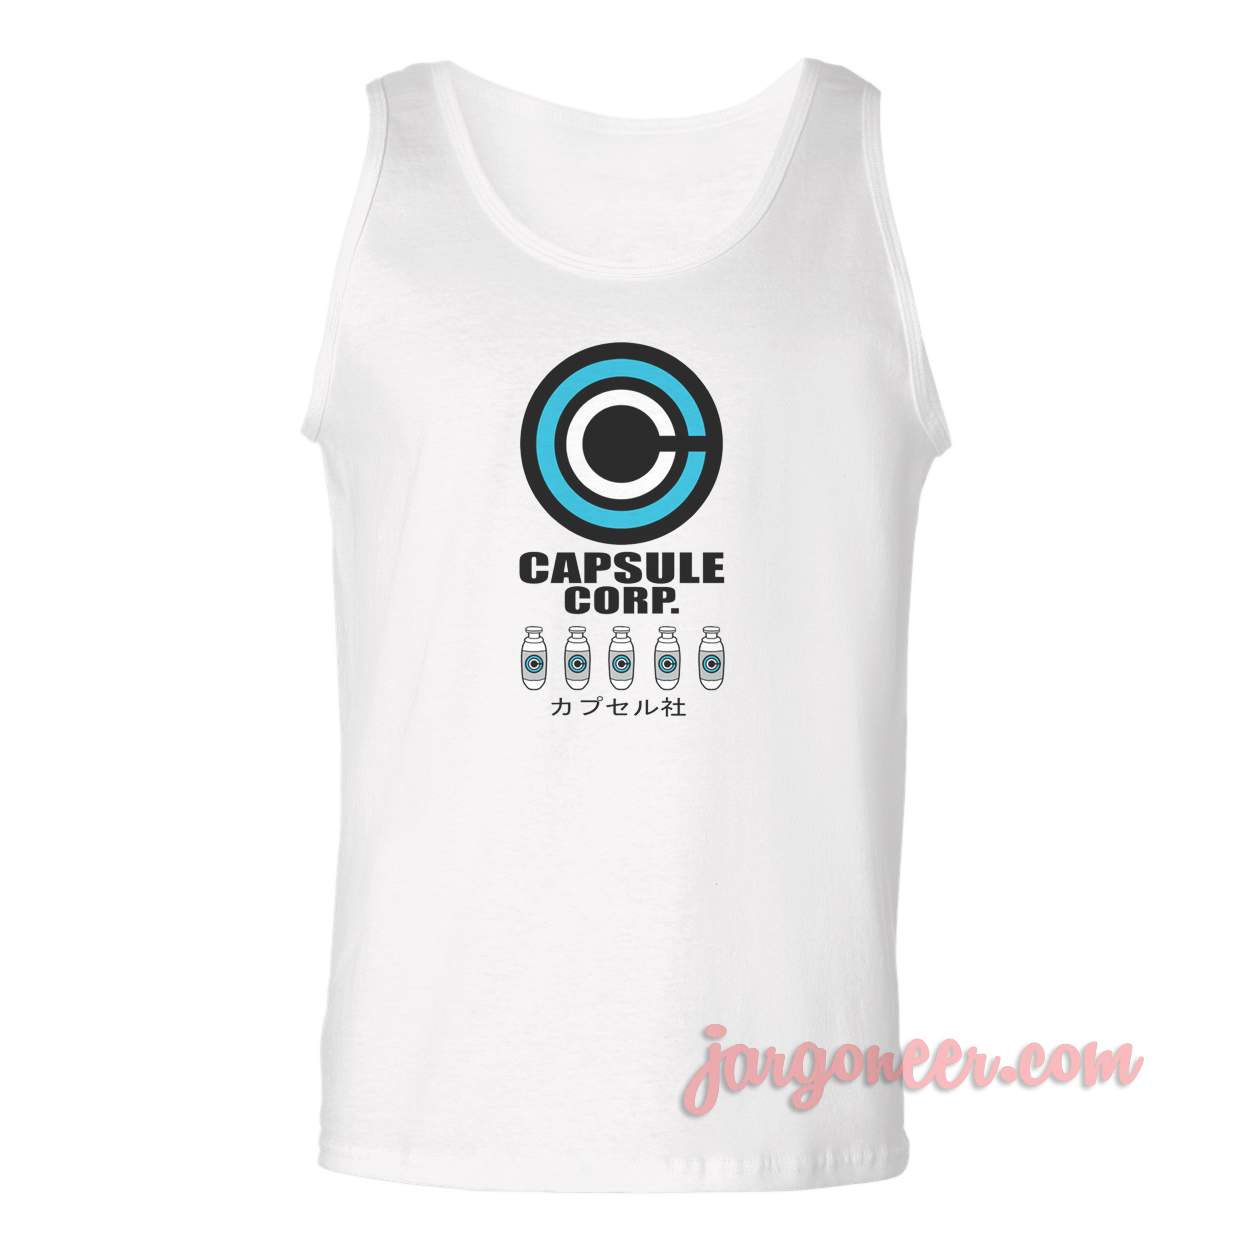 Capsule Corp - Shop Unique Graphic Cool Shirt Designs